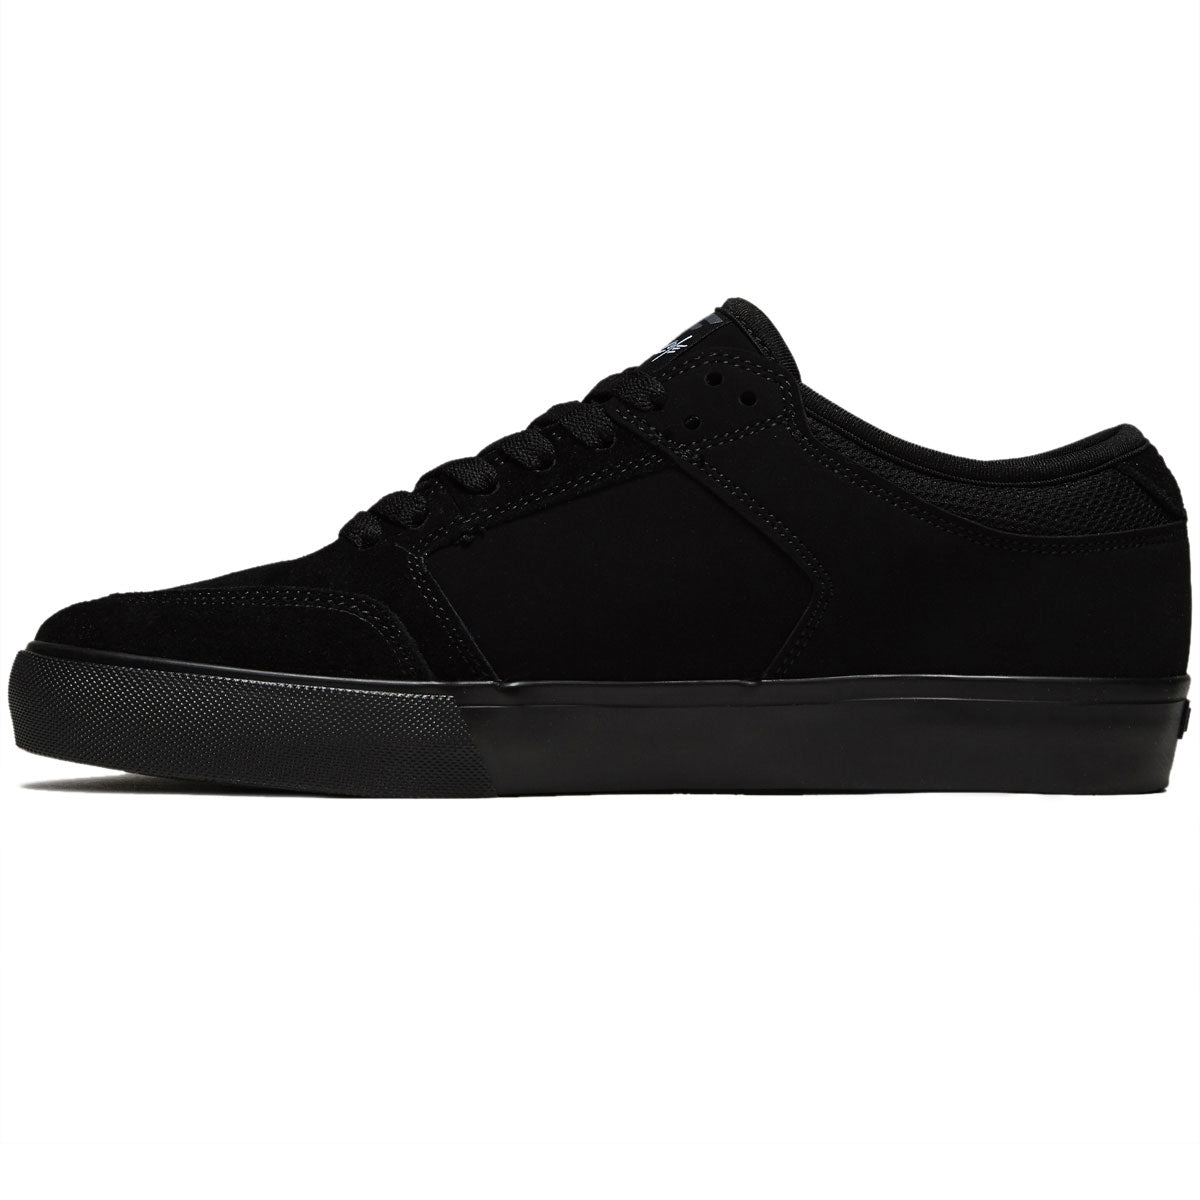 Fallen Ripper Chris Cole Shoes - Black/Black image 2